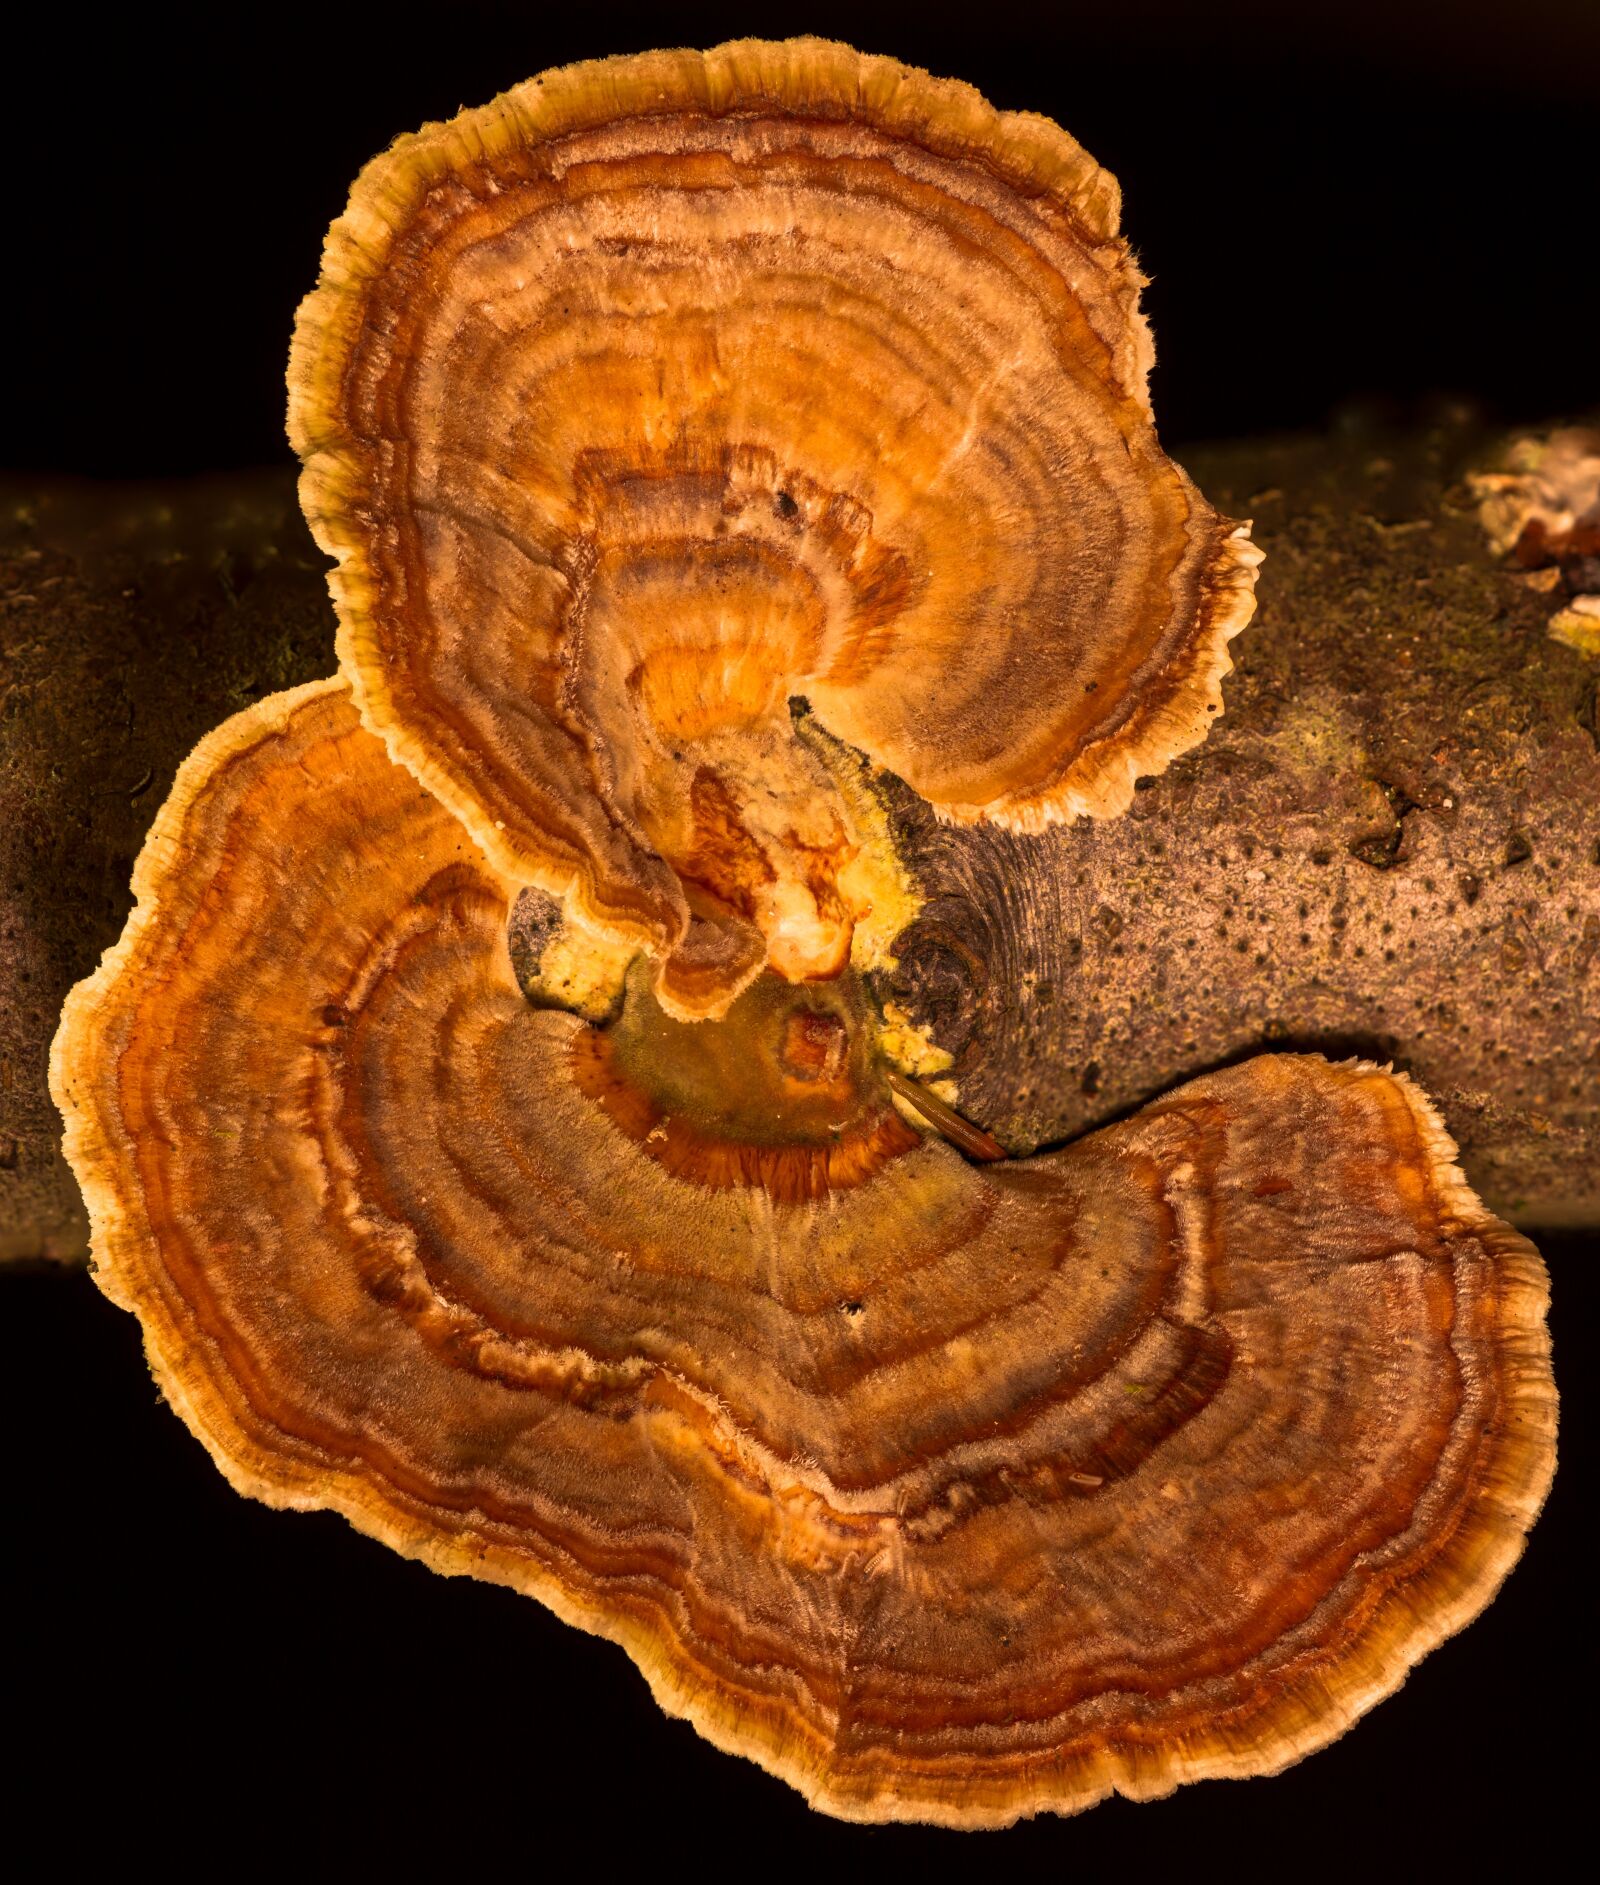 Canon EOS 7D sample photo. Mushroom, tree fungus, velvety photography